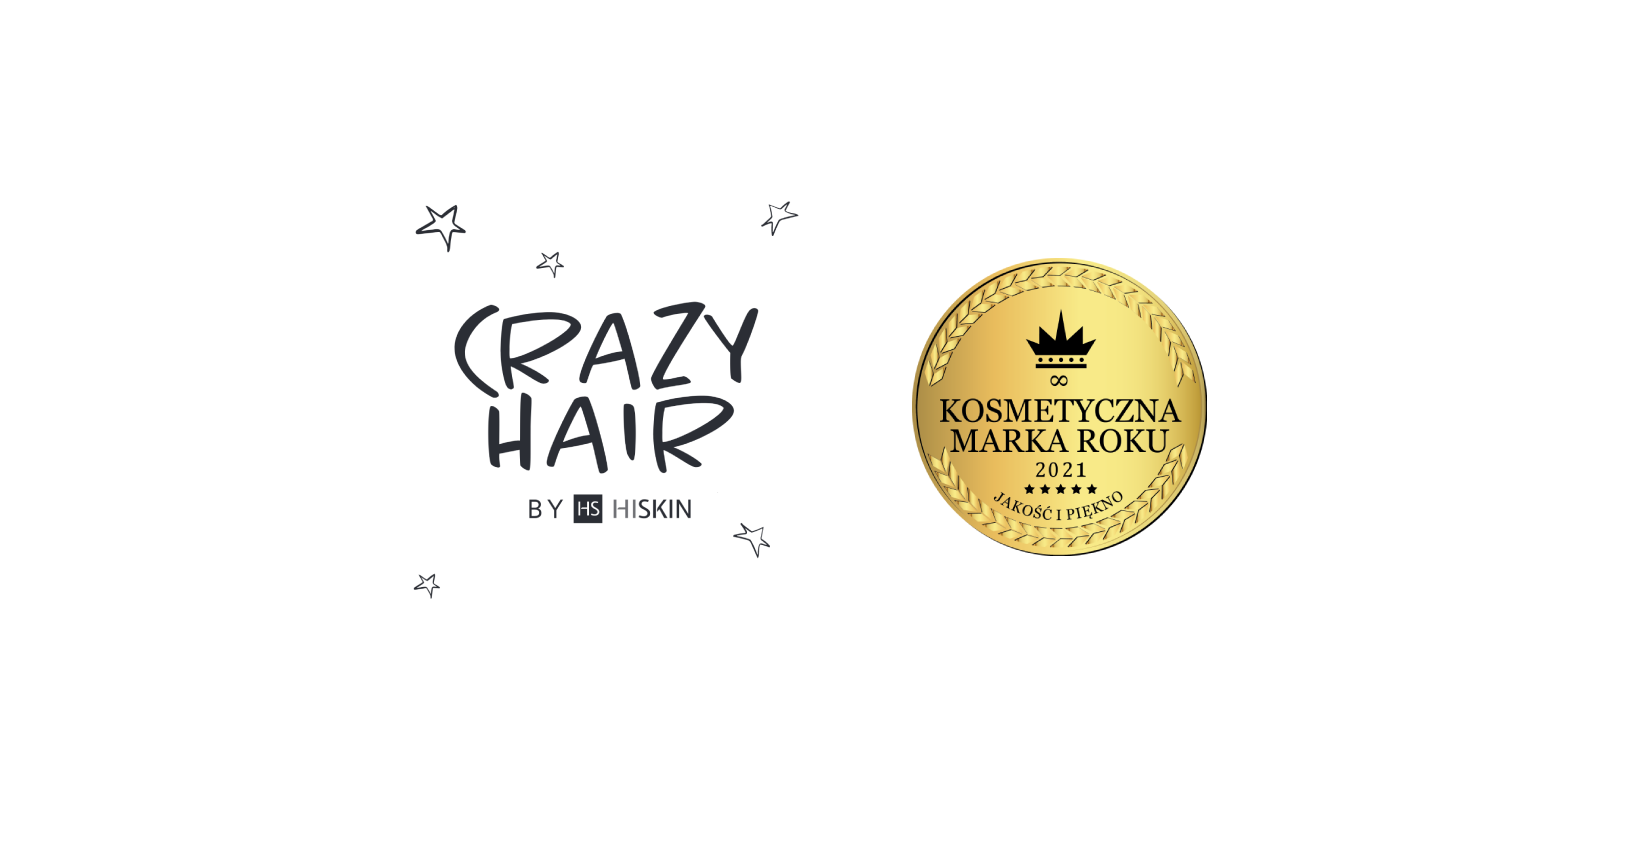 Crazy Hair od Hiskin - Kosmetyczna Marka Roku / Beauty Star 2021